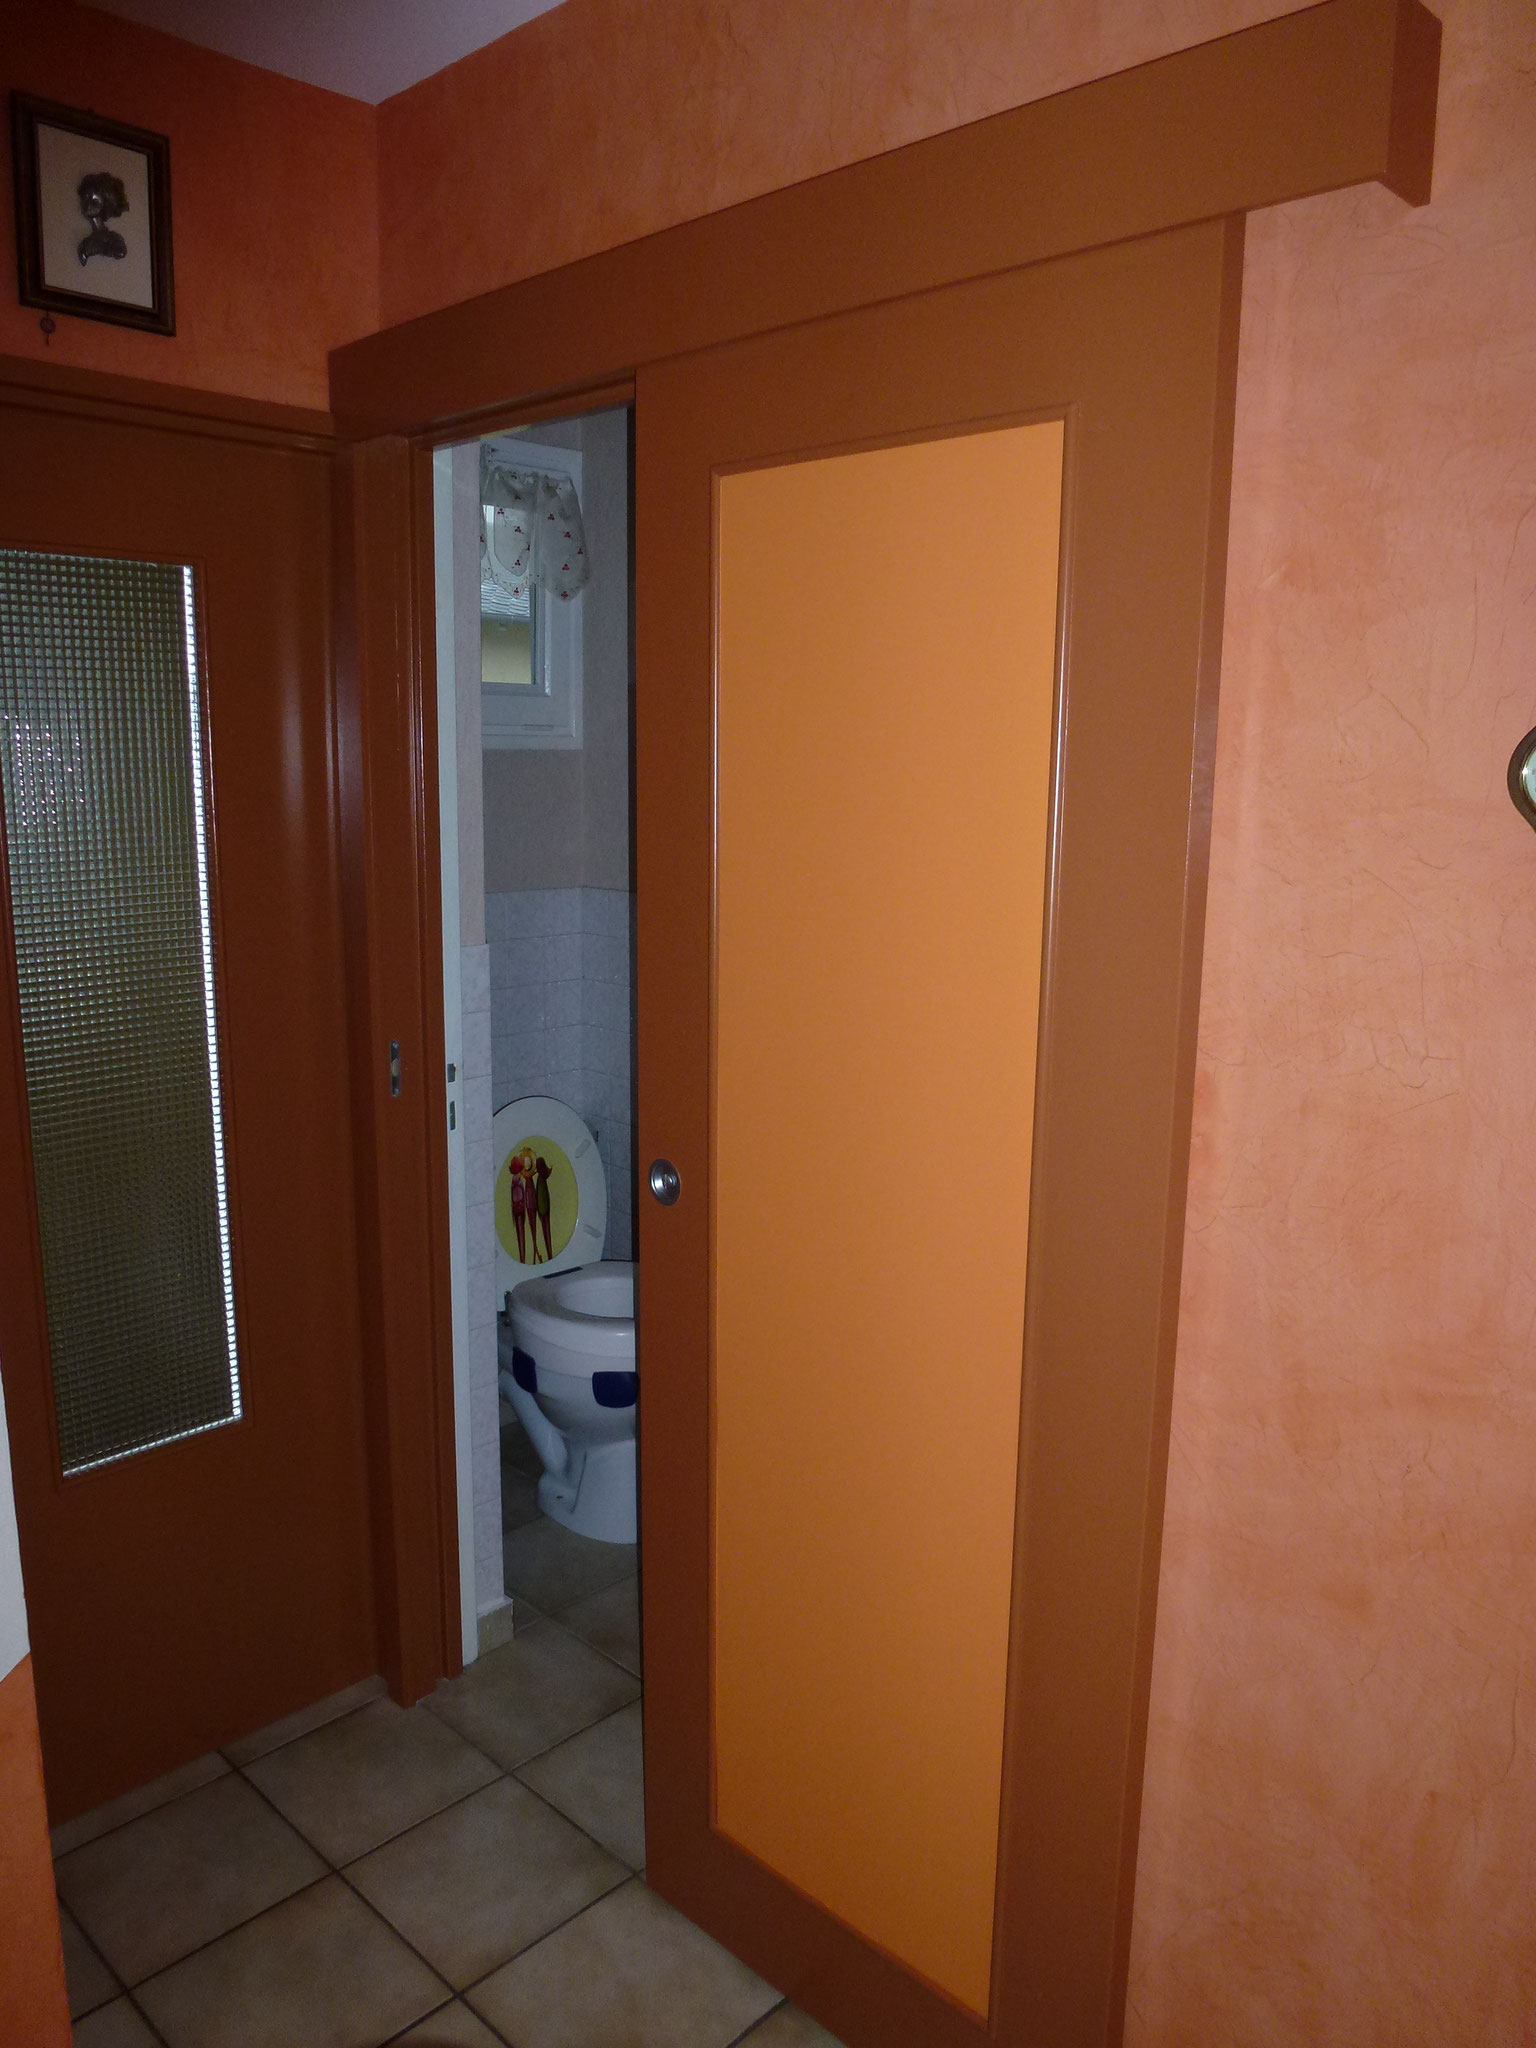 porte coulissante en position ouverte pour remplacer porte ouvrante dans les wc